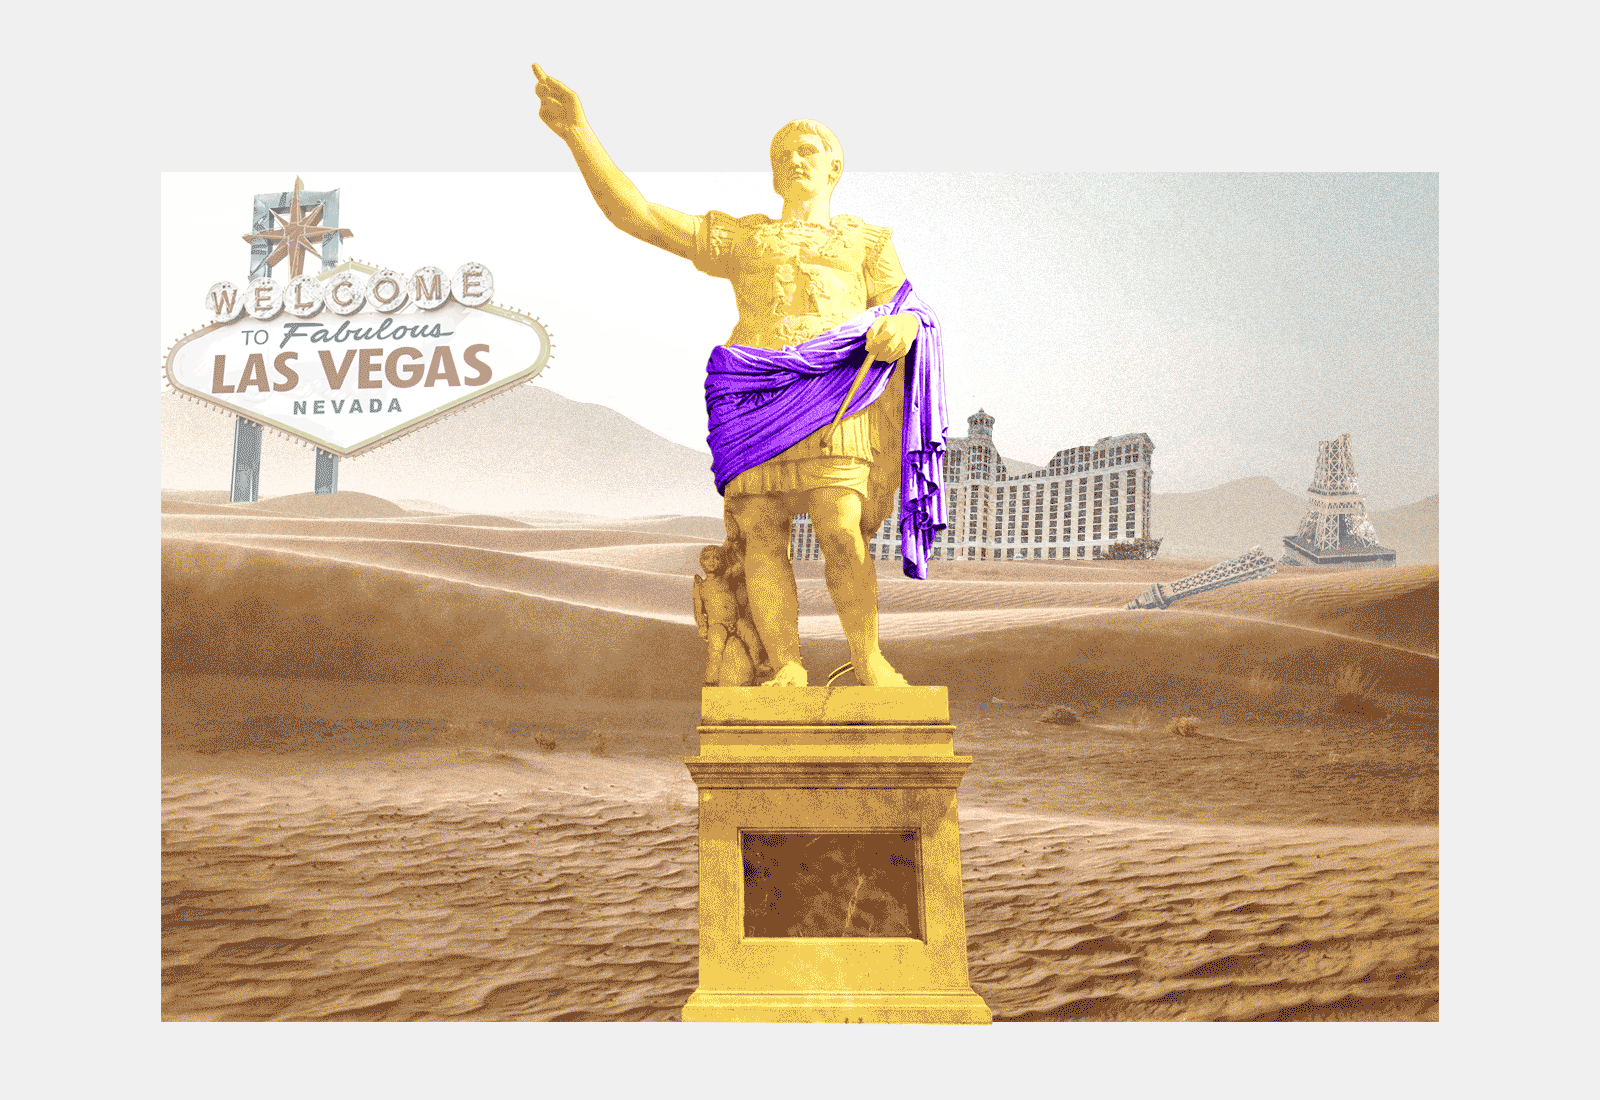 Julius Caesar statue in apocalyptic Las Vegas with tumbleweeds